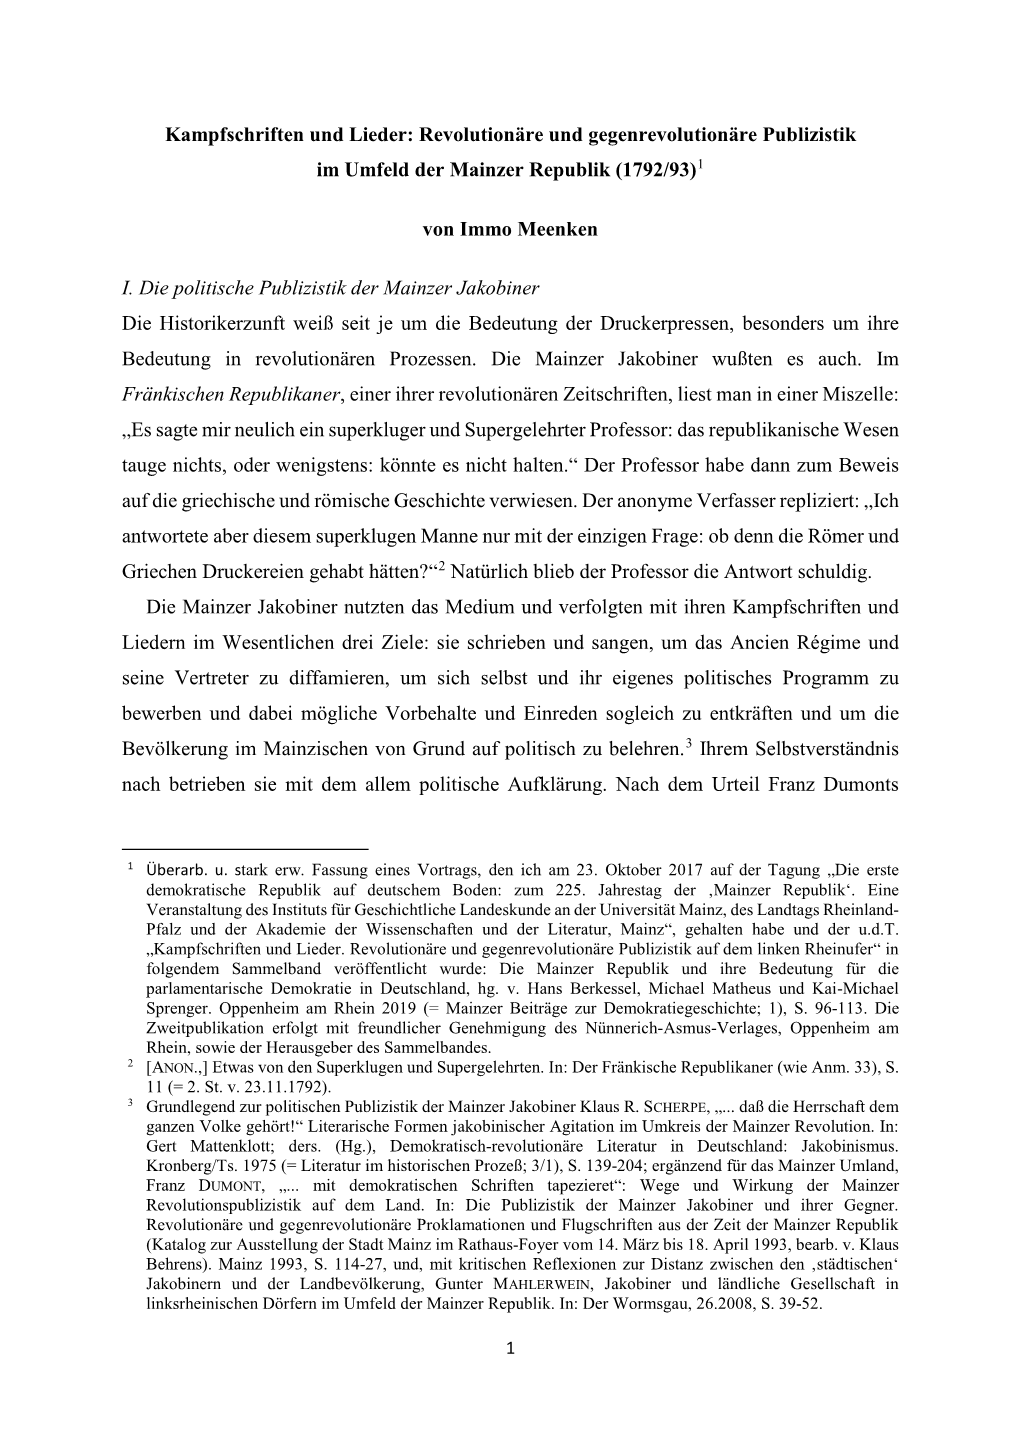 Revolutionäre Und Gegenrevolutionäre Publizistik Im Umfeld Der Mainzer Republik (1792/93)1